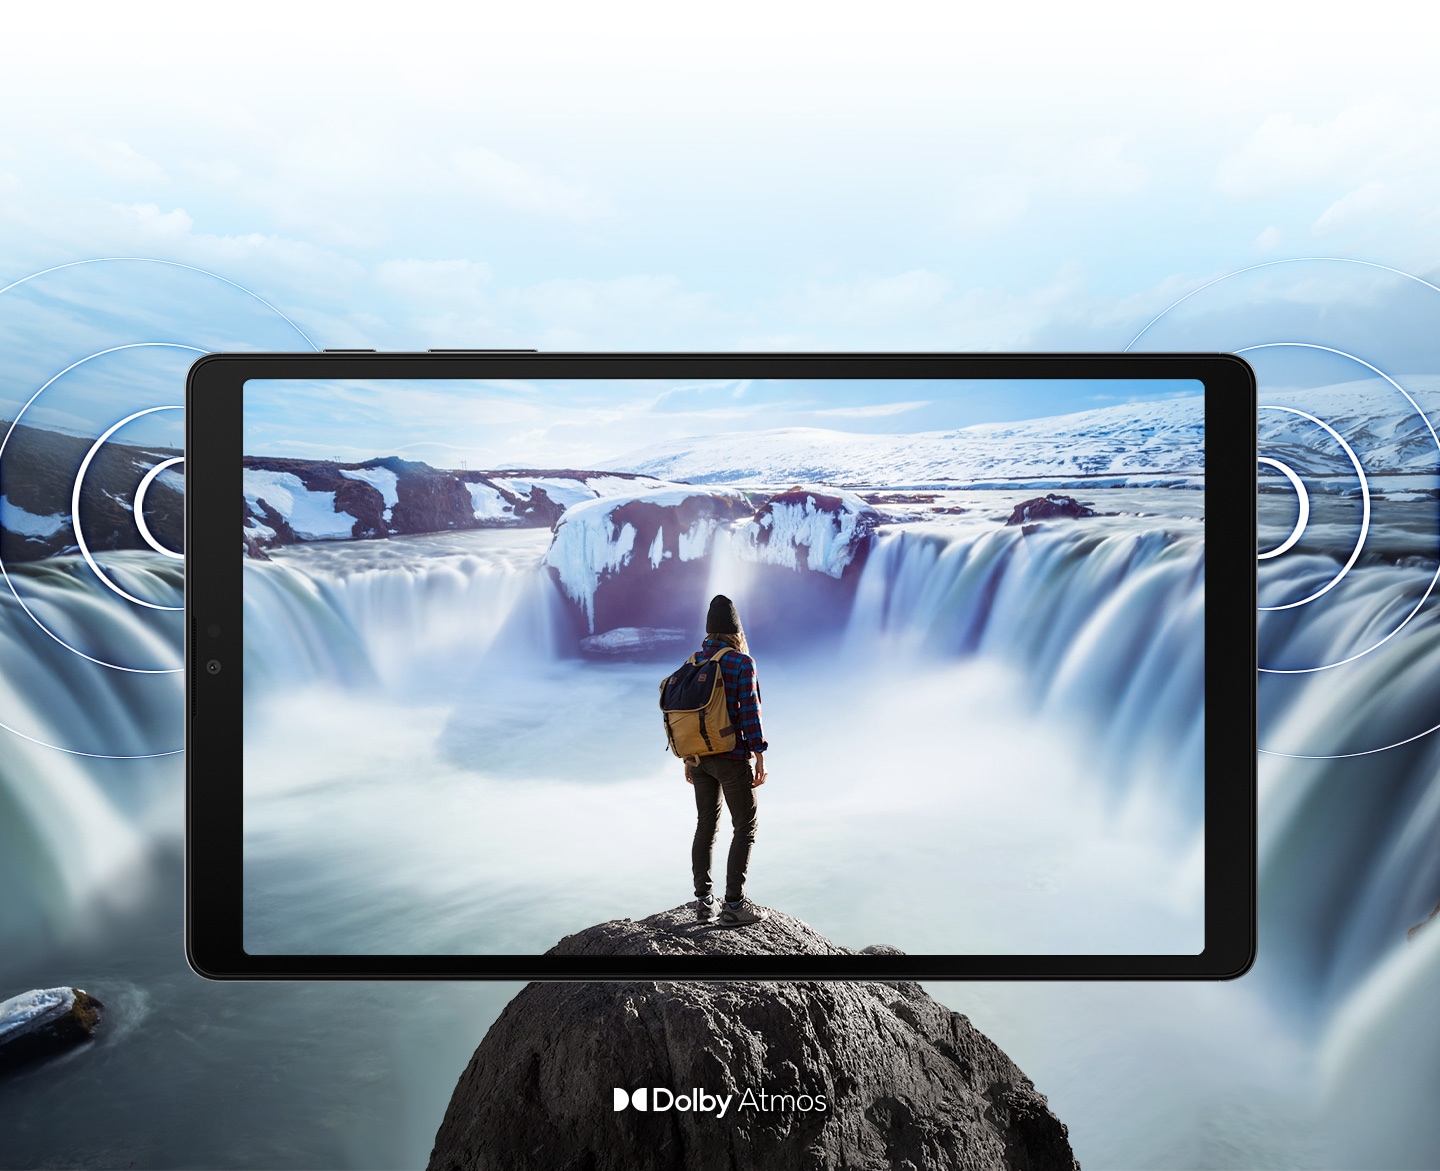 從正面觀看橫放的 Galaxy Tab A7 Lite，螢幕顯示一個人站在奔騰瀑布前的岩石上。圖像超出平板邊框，展示更大的顯示範圍。平板兩側如漣漪般波紋，展示雙喇叭的位置及 Dolby Atmos 環繞音效。